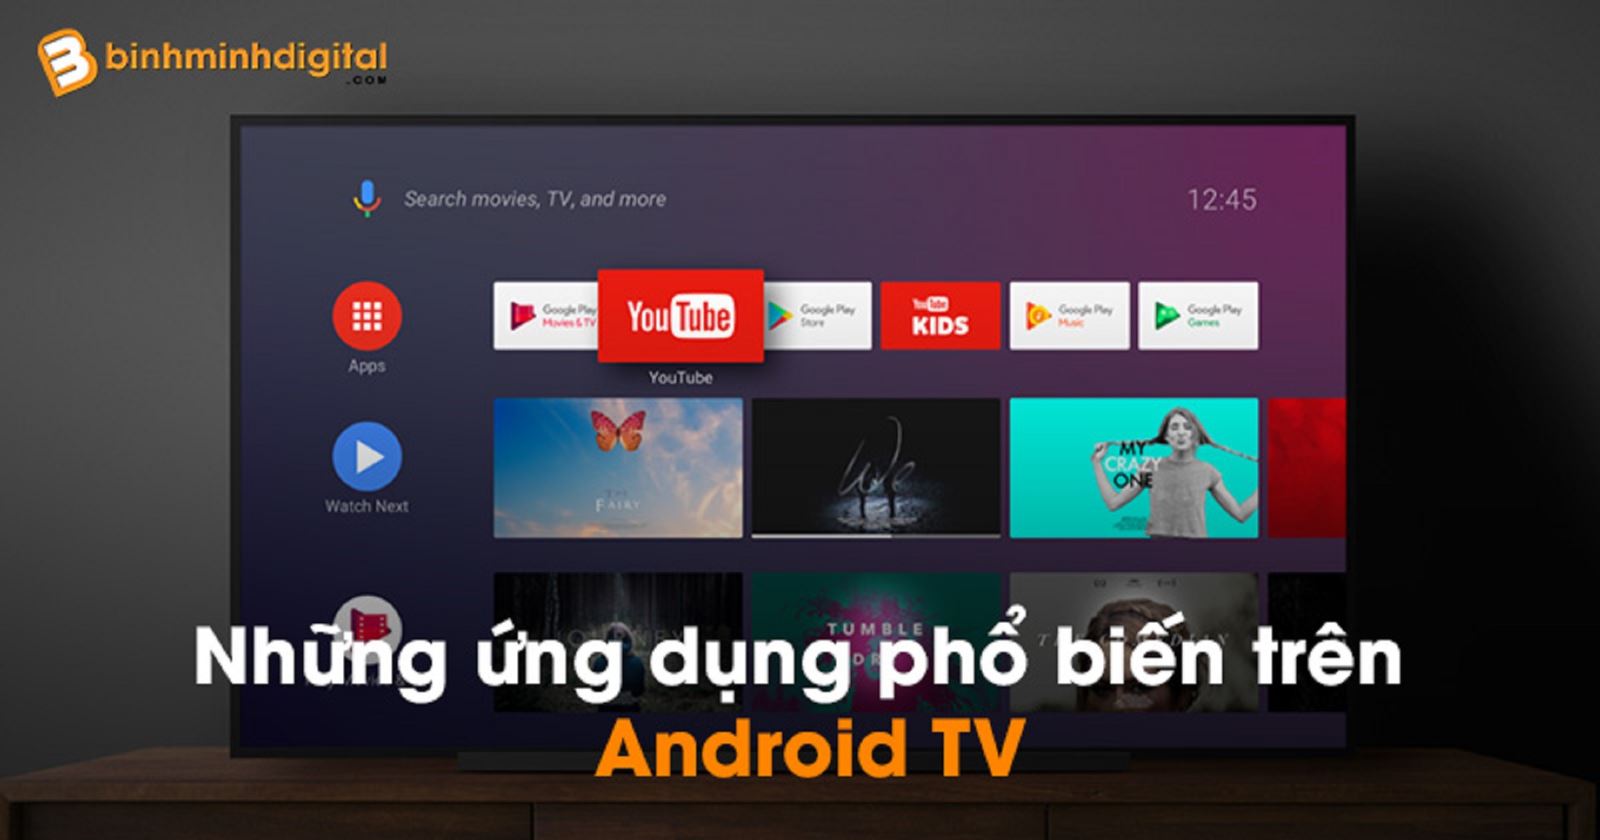 Những ứng dụng phổ biến trên Android TV